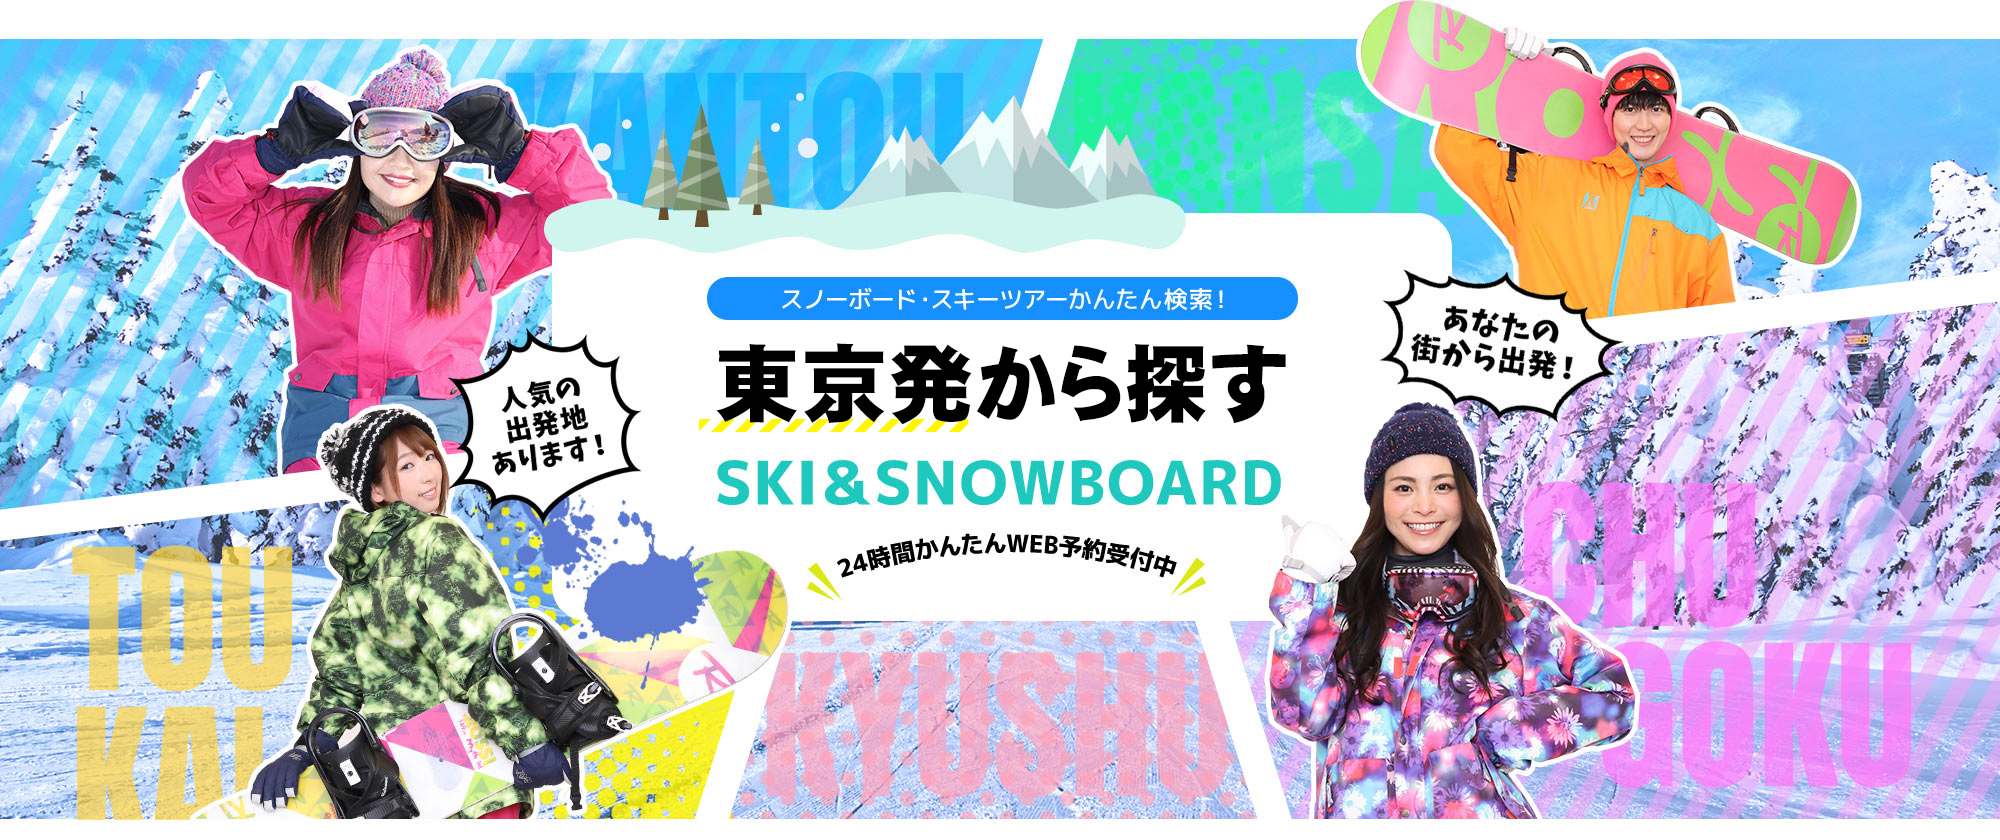 スノーボード・スキーツアーかんたん検索！ 新宿発から探す SKI&SNOWBOARD